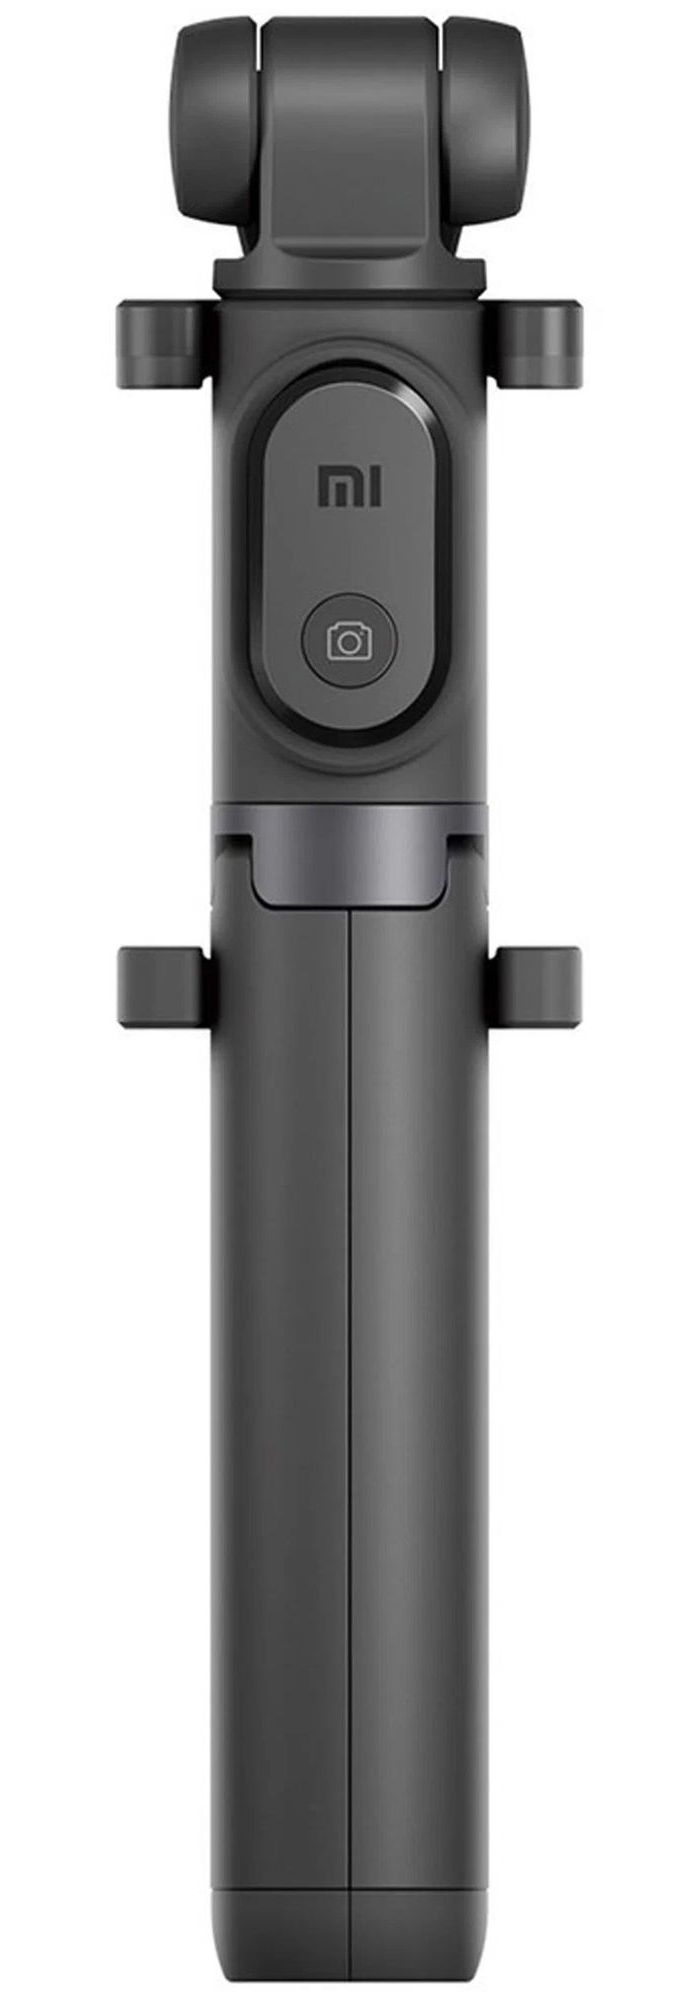 xiaomi монопод трипод xiaomi mi bluetooth selfie stick tripod xmzpg01ym черный Монопод Xiaomi Mi Selfie Stick Tripod Black (XMZPG01YM)